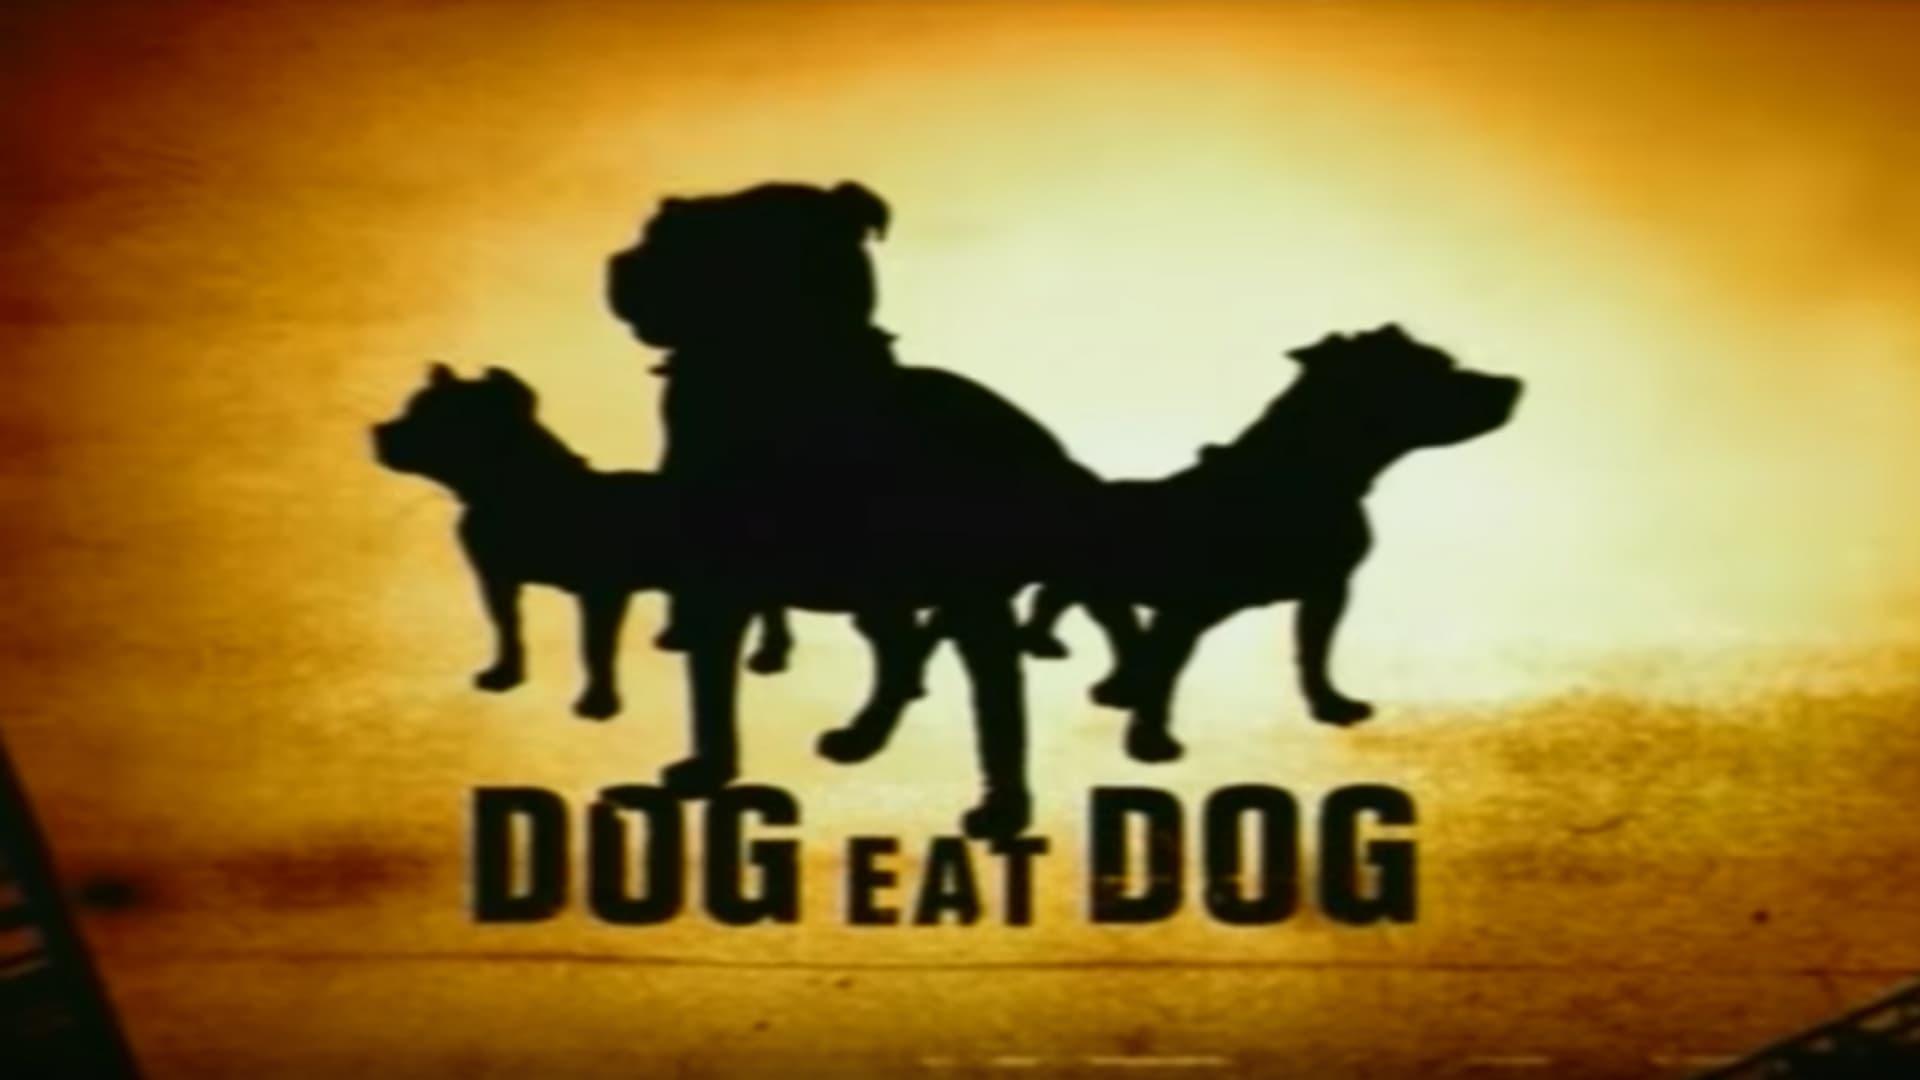 Dog Eat Dog backdrop